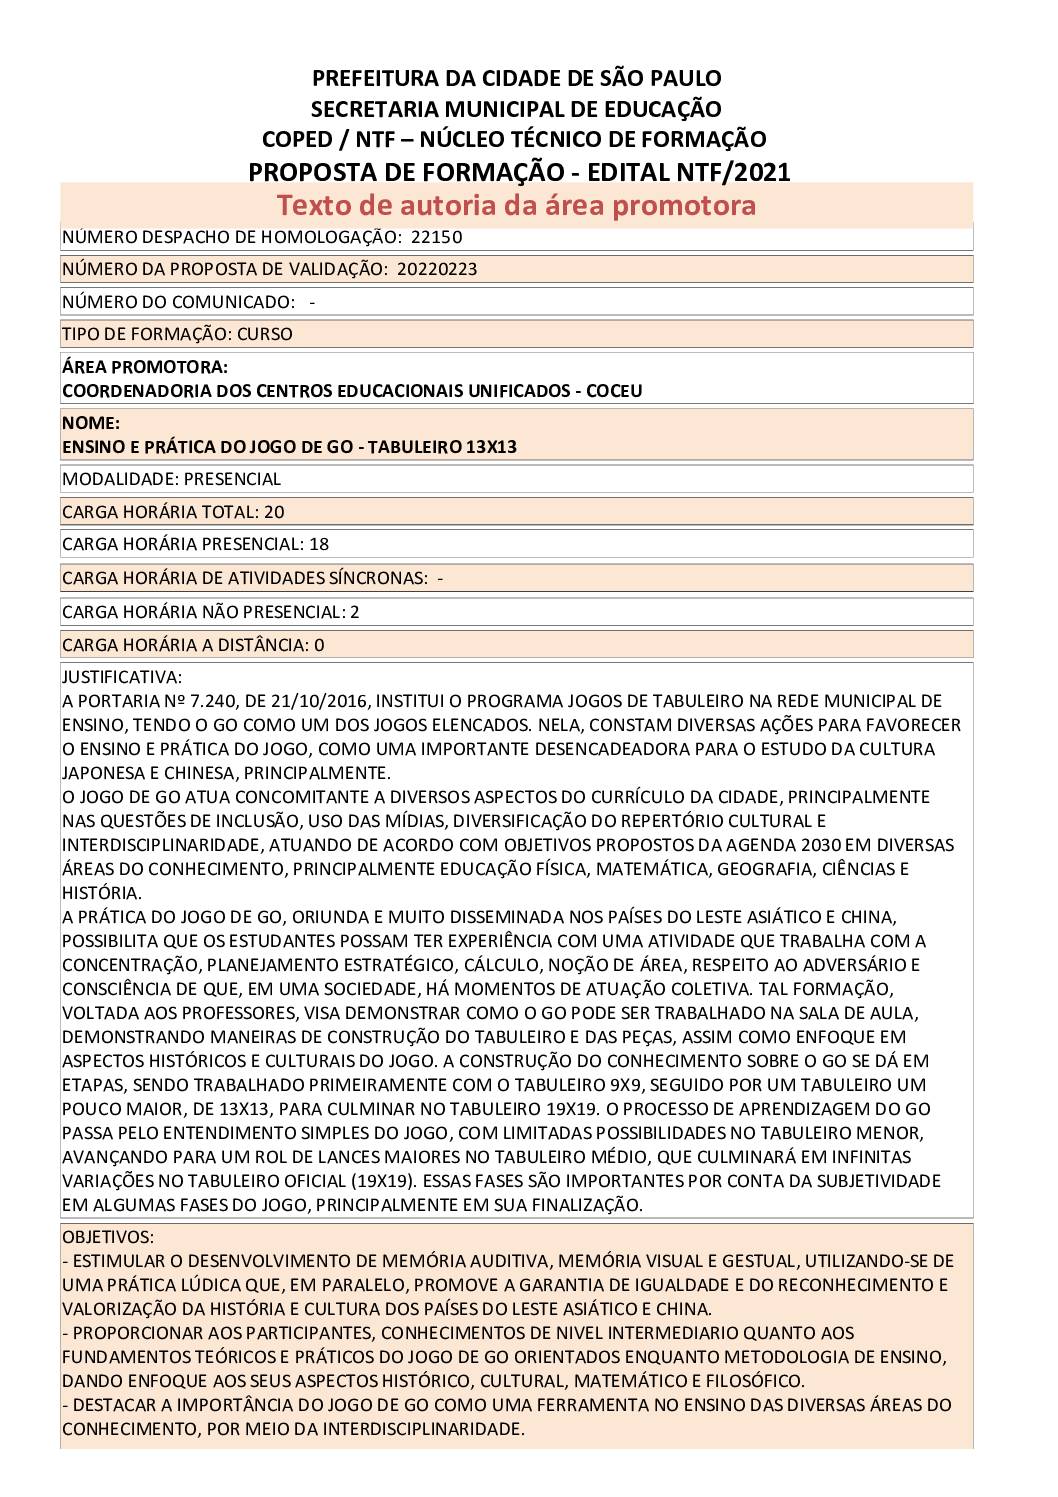 PDF com informações sobre o curso: ENSINO E PRATICA DO JOGO DE GO - TABULEIRO 13X13